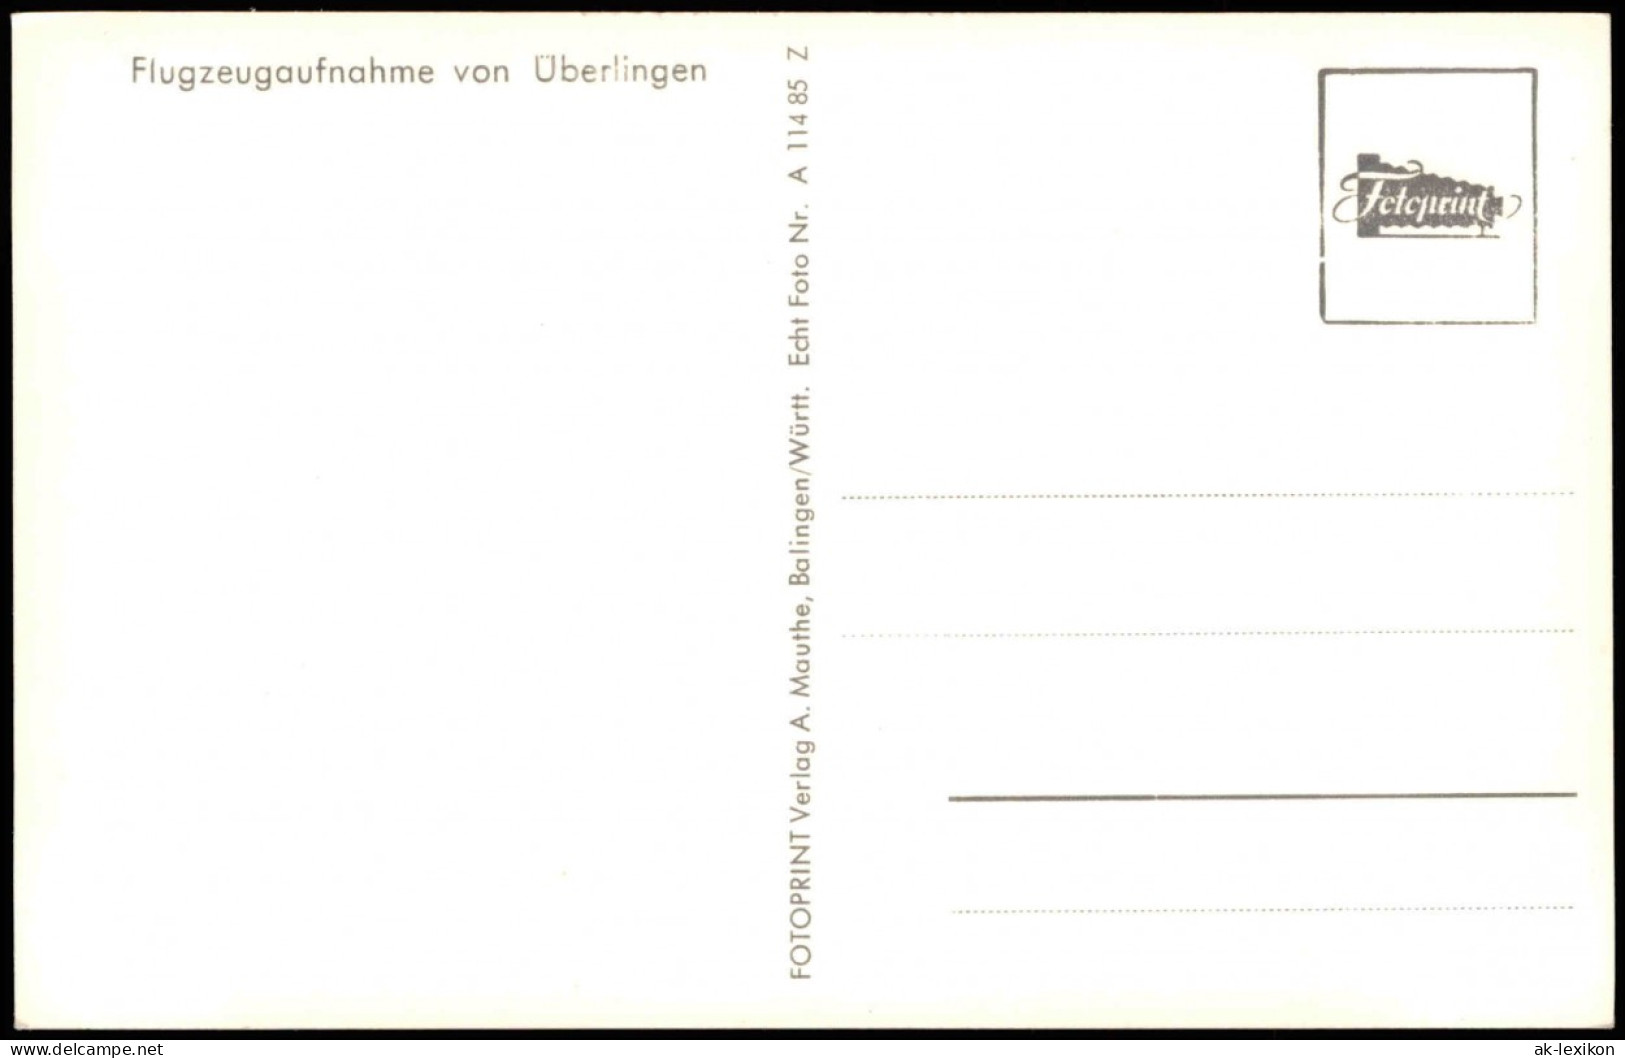 Überlingen Luftbild Flugzeugaufnahme Ortszentrum & Bodensee 1957 - Ueberlingen